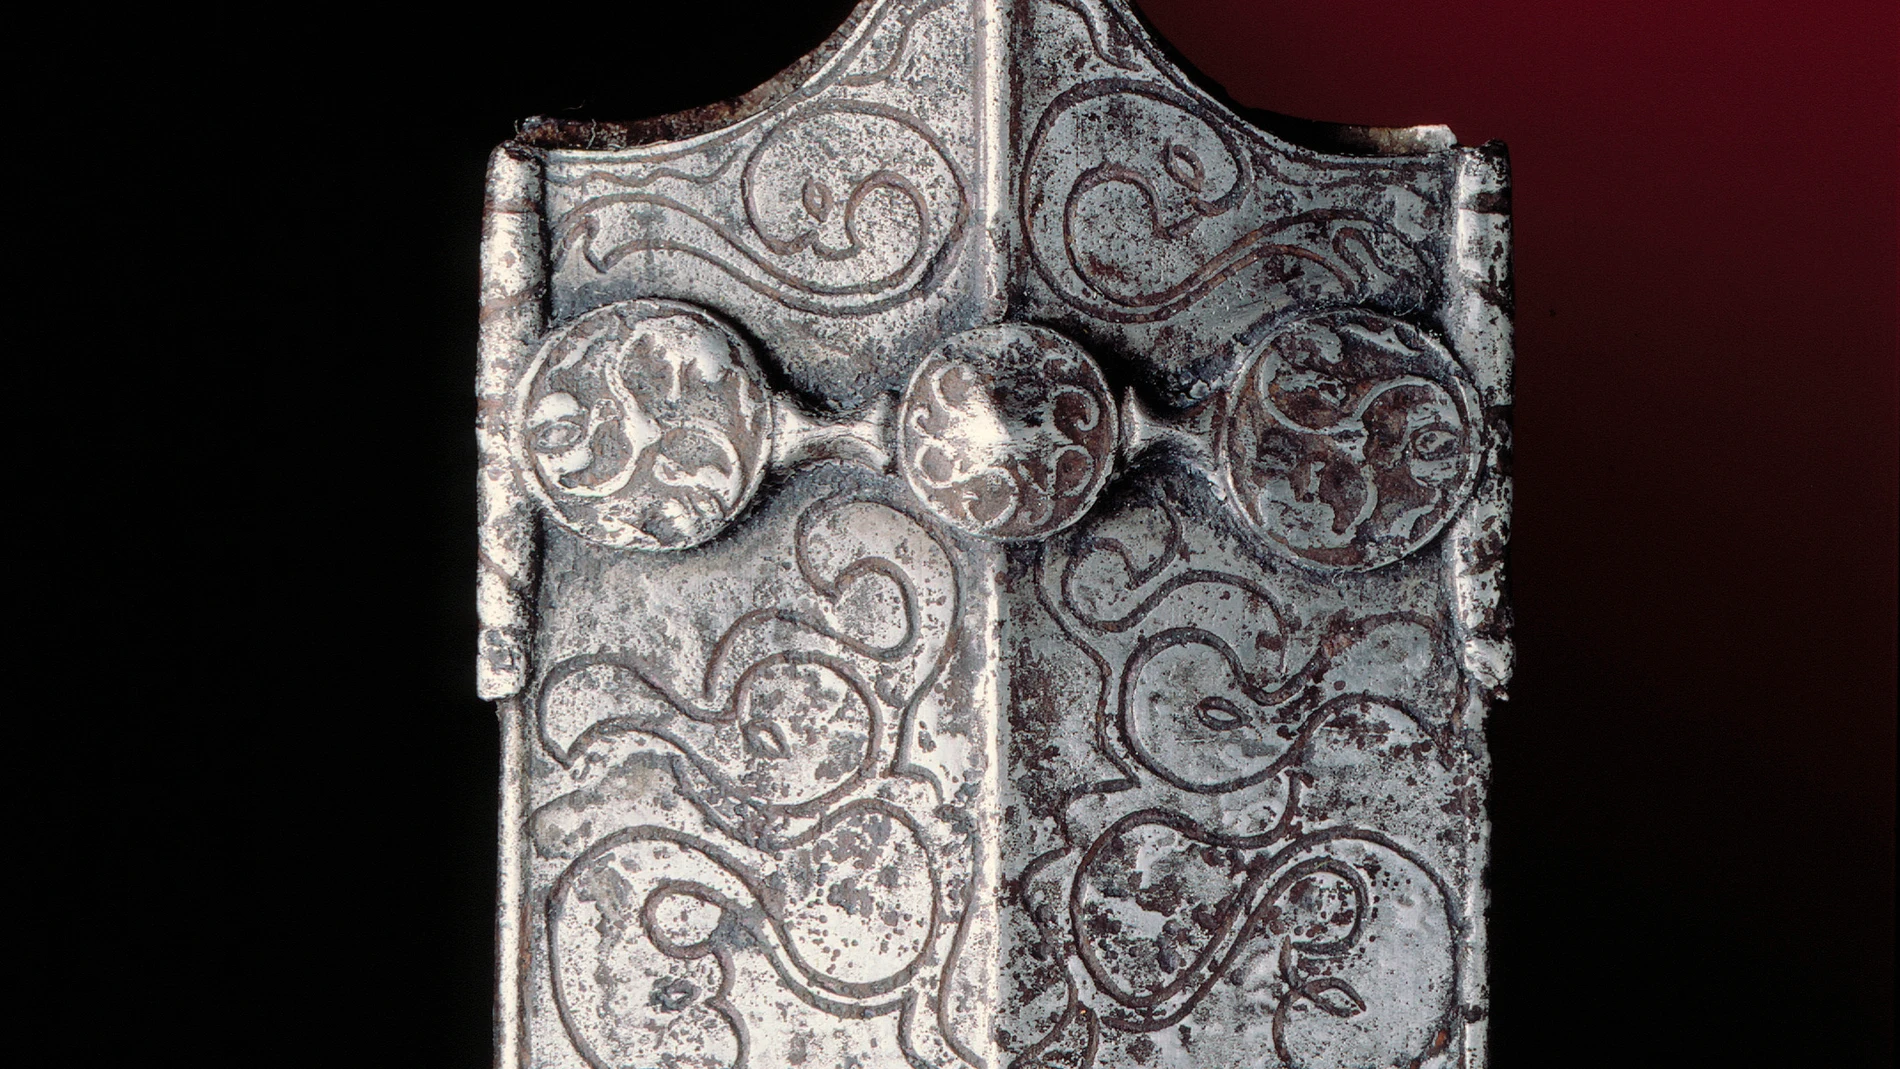 Embocadura de una vaina de espada celta de La Tène (lago de Neuchâtel), datada a finales del siglo III a. C., que muestra una elaborada decoración zoomorfa de probable carácter apotropaico 